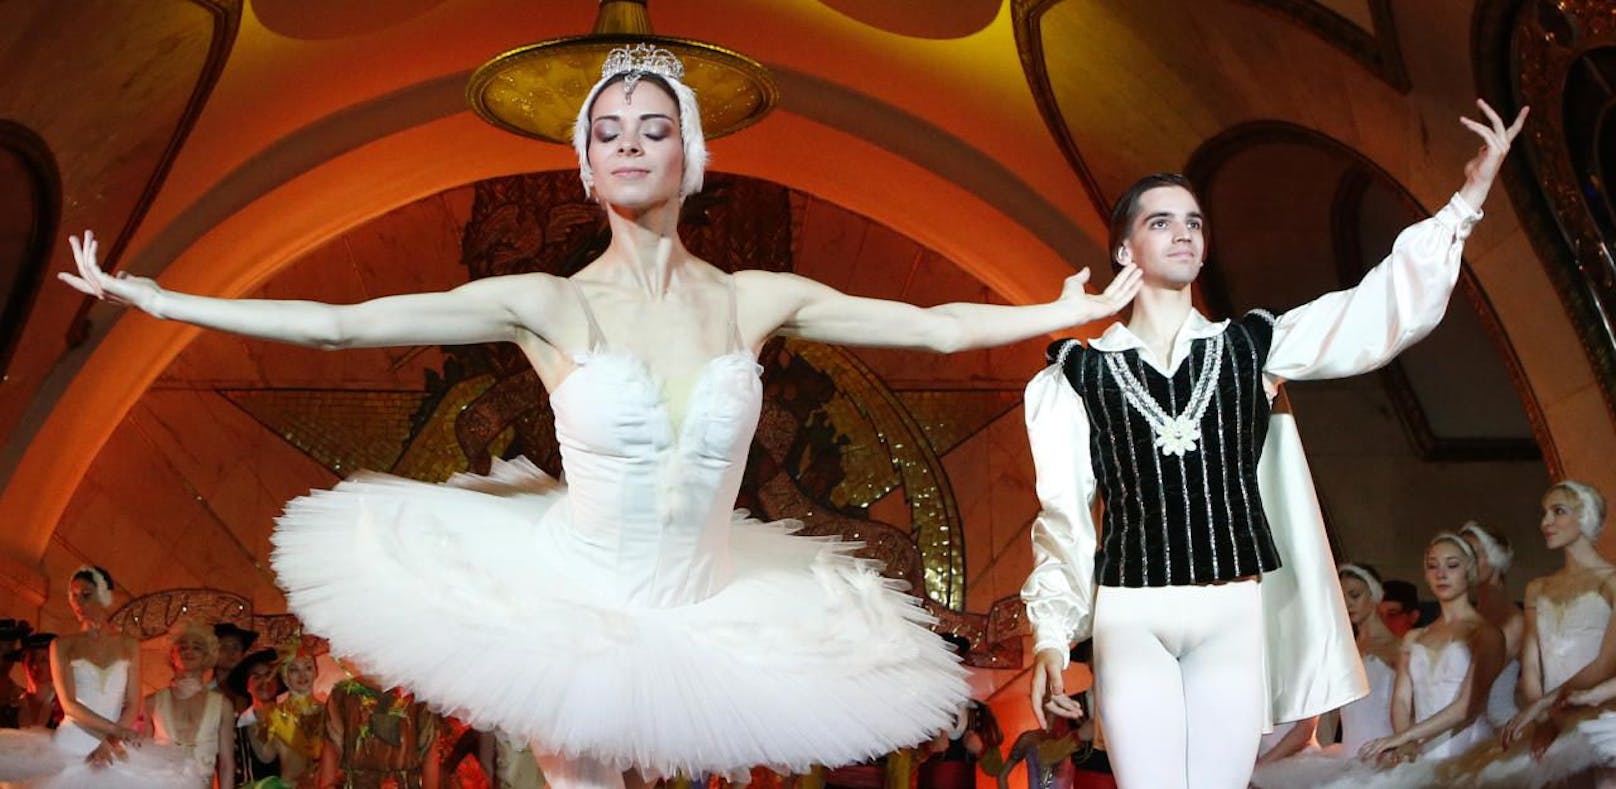 Kreml-Ballett tanzt die Nacht in U-Bahn durch